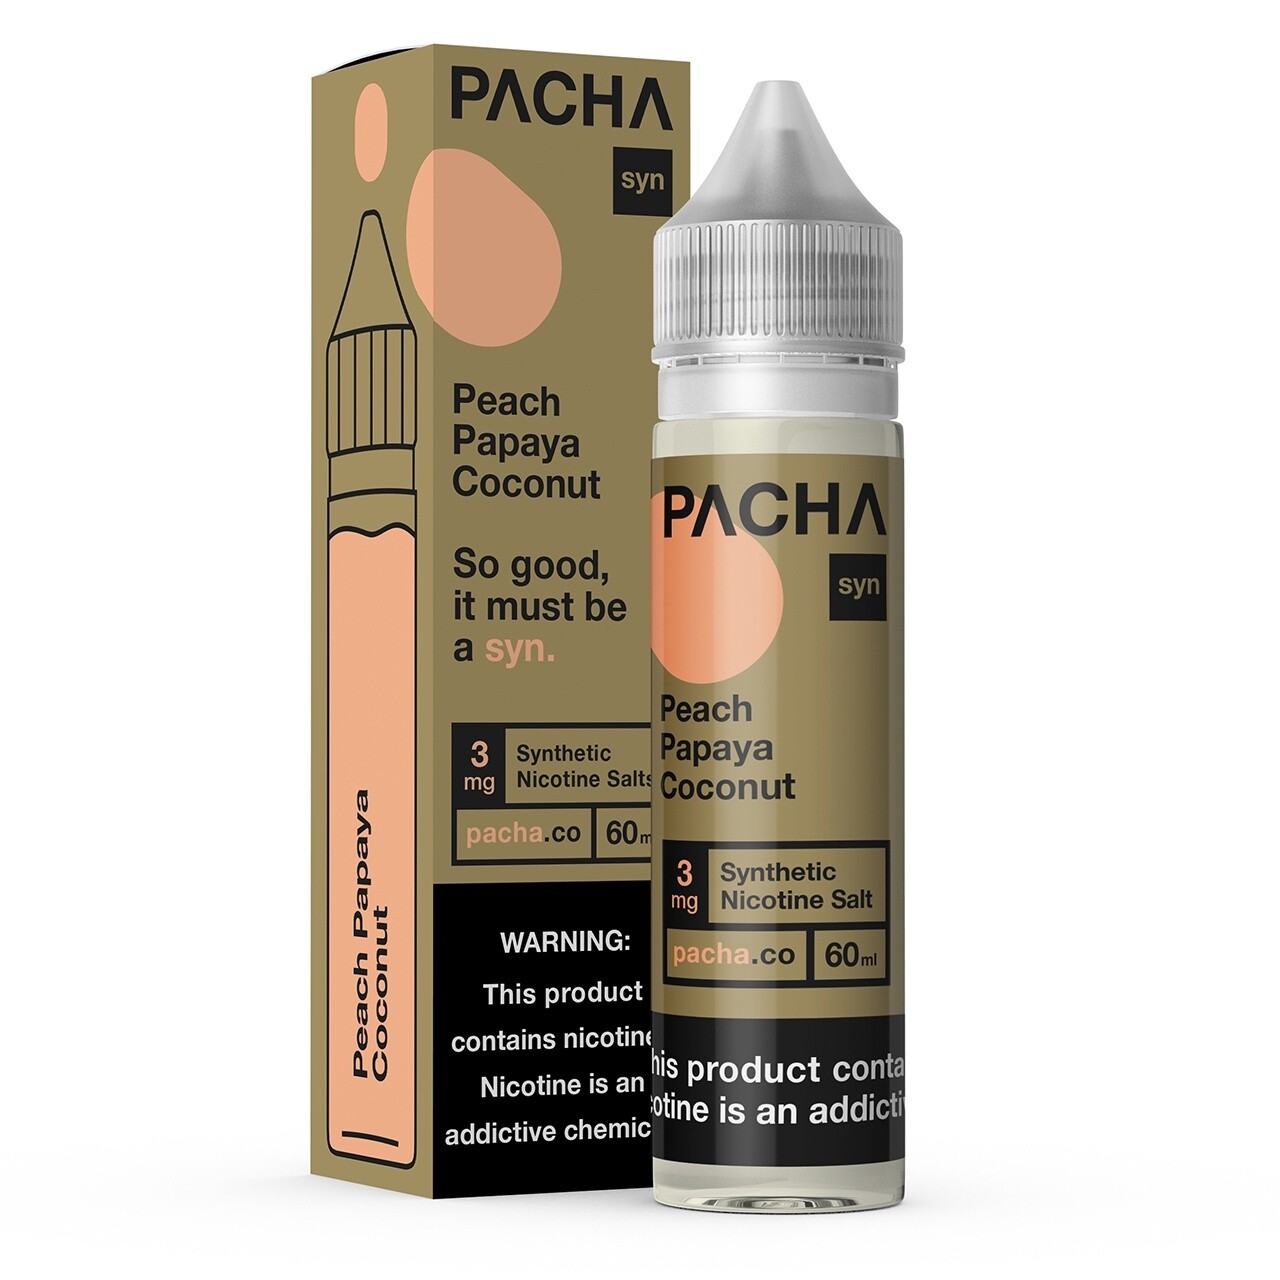 Pacha Syn 3mg Tobacco-Free Nicotine 60mL